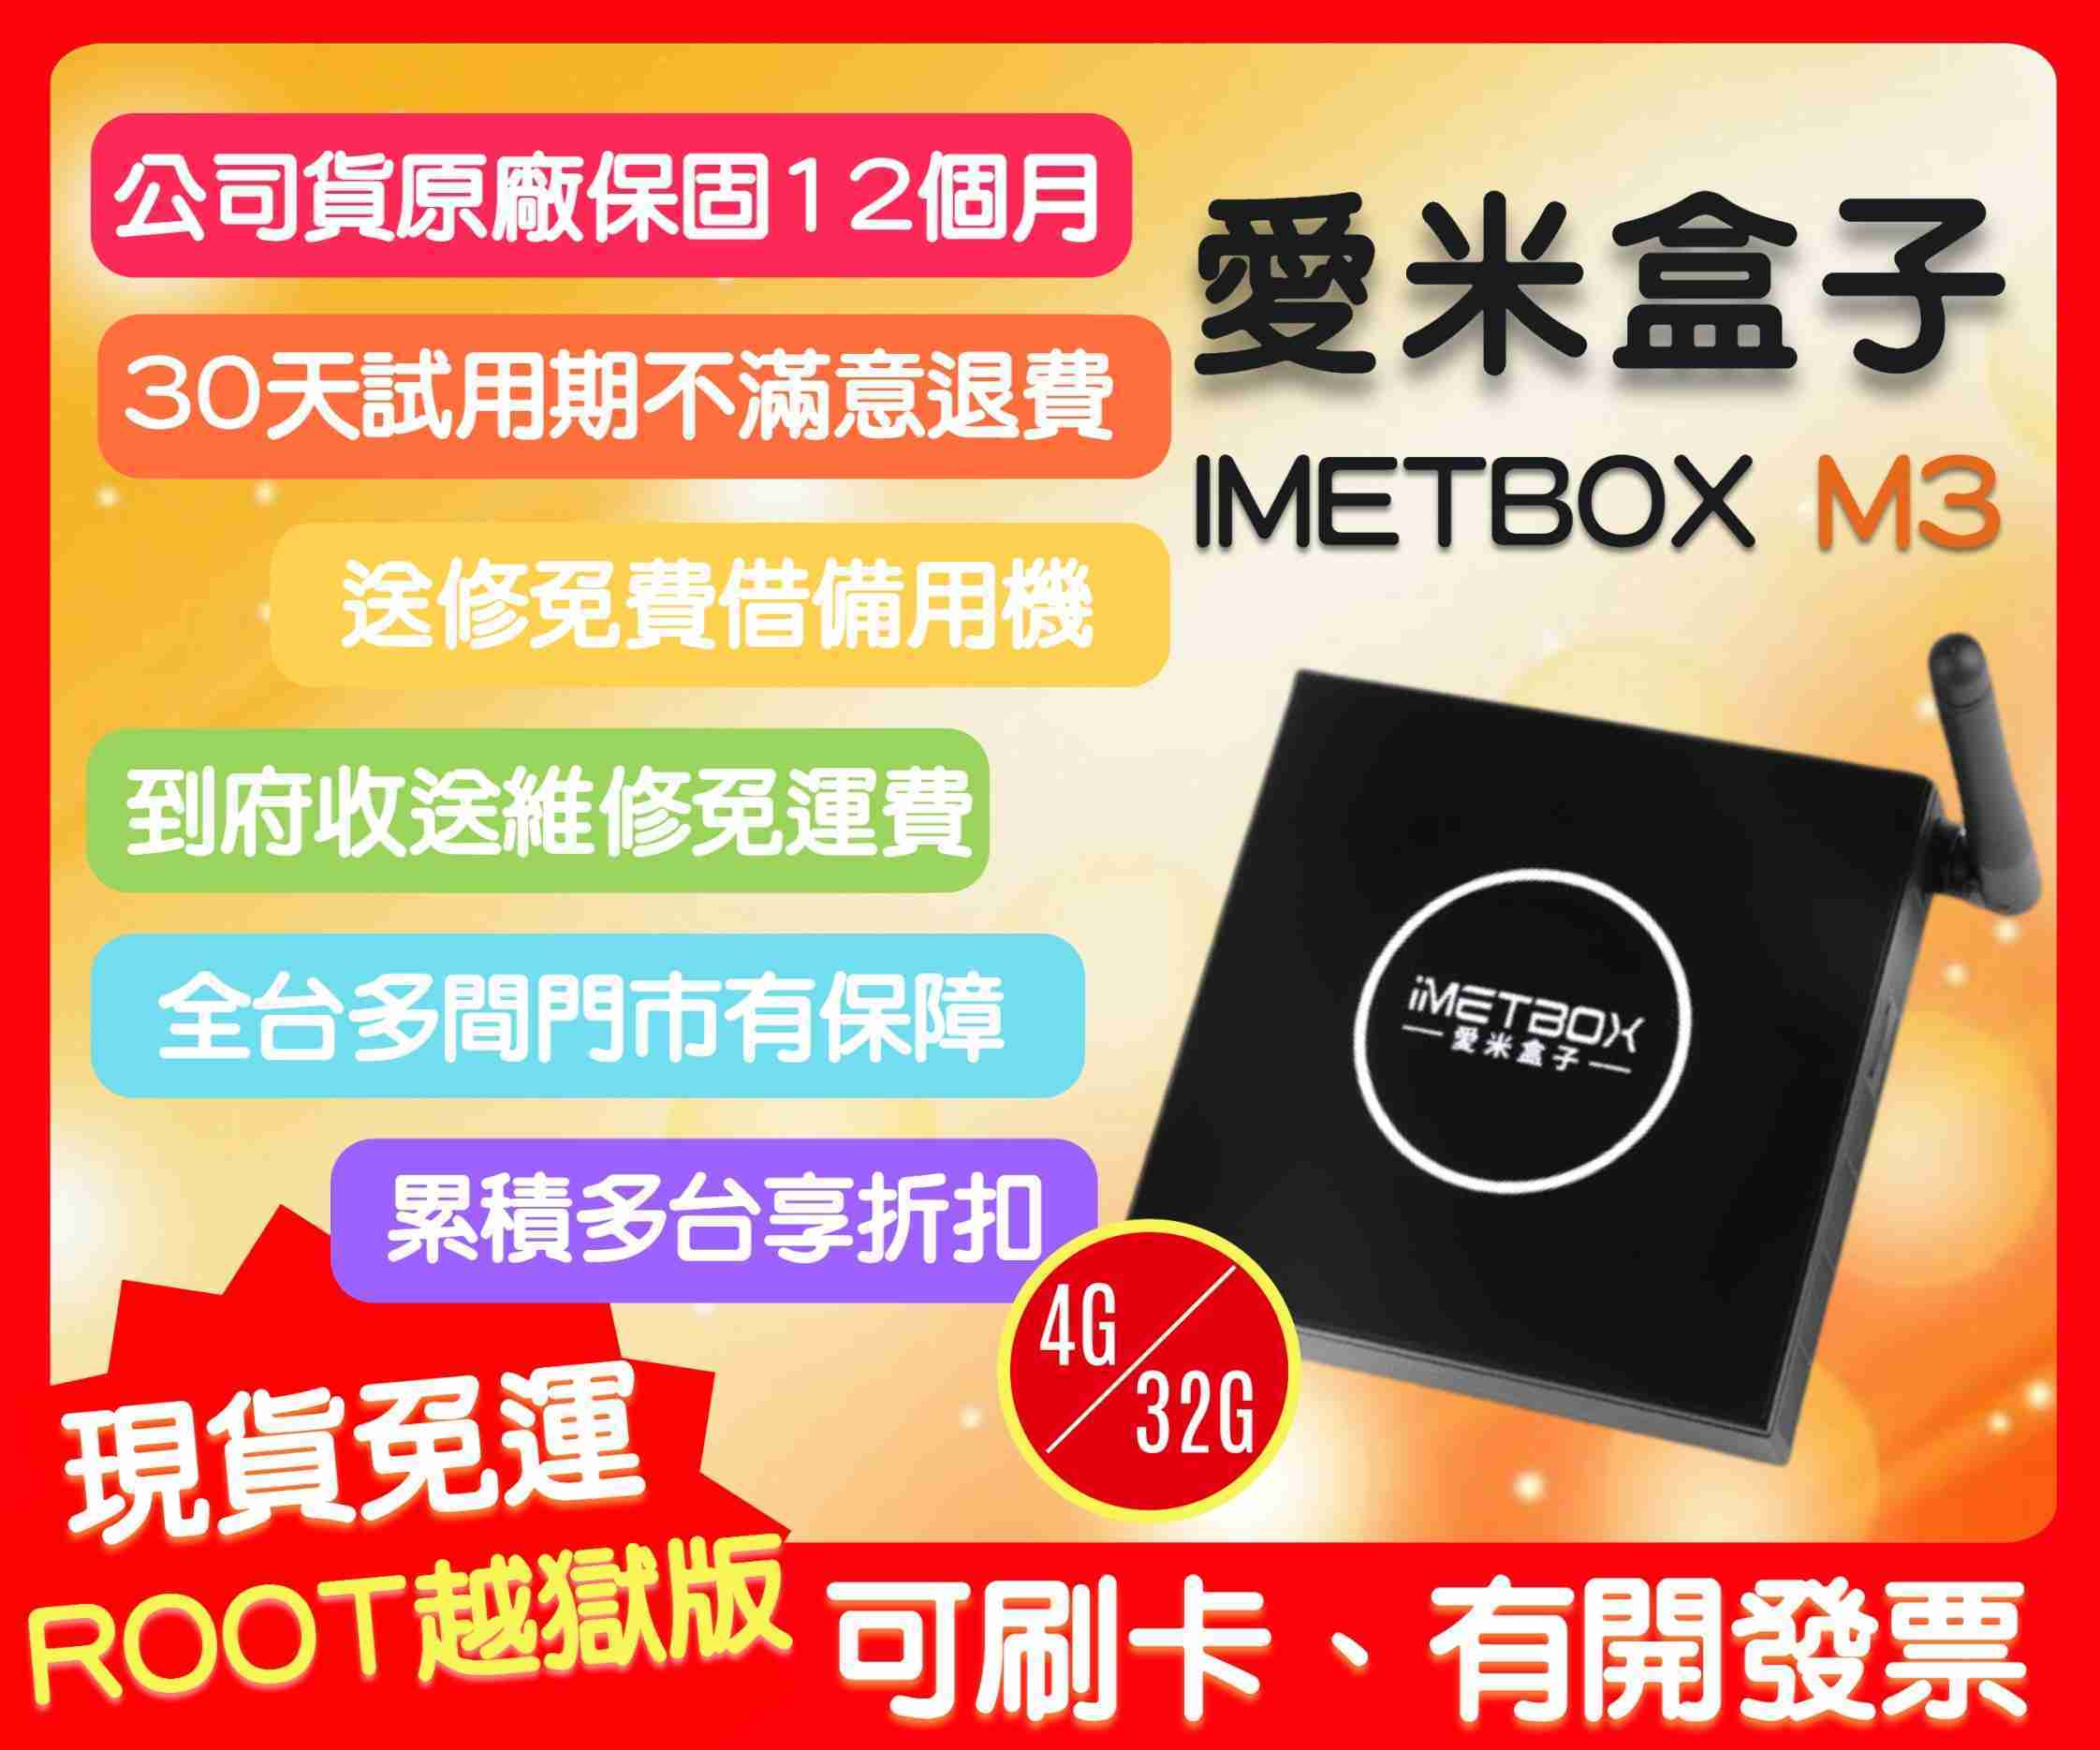 【艾爾巴數位】享30天試用期,愛米M3 IMETBOX 4G/32G ,贈品價~實體店面